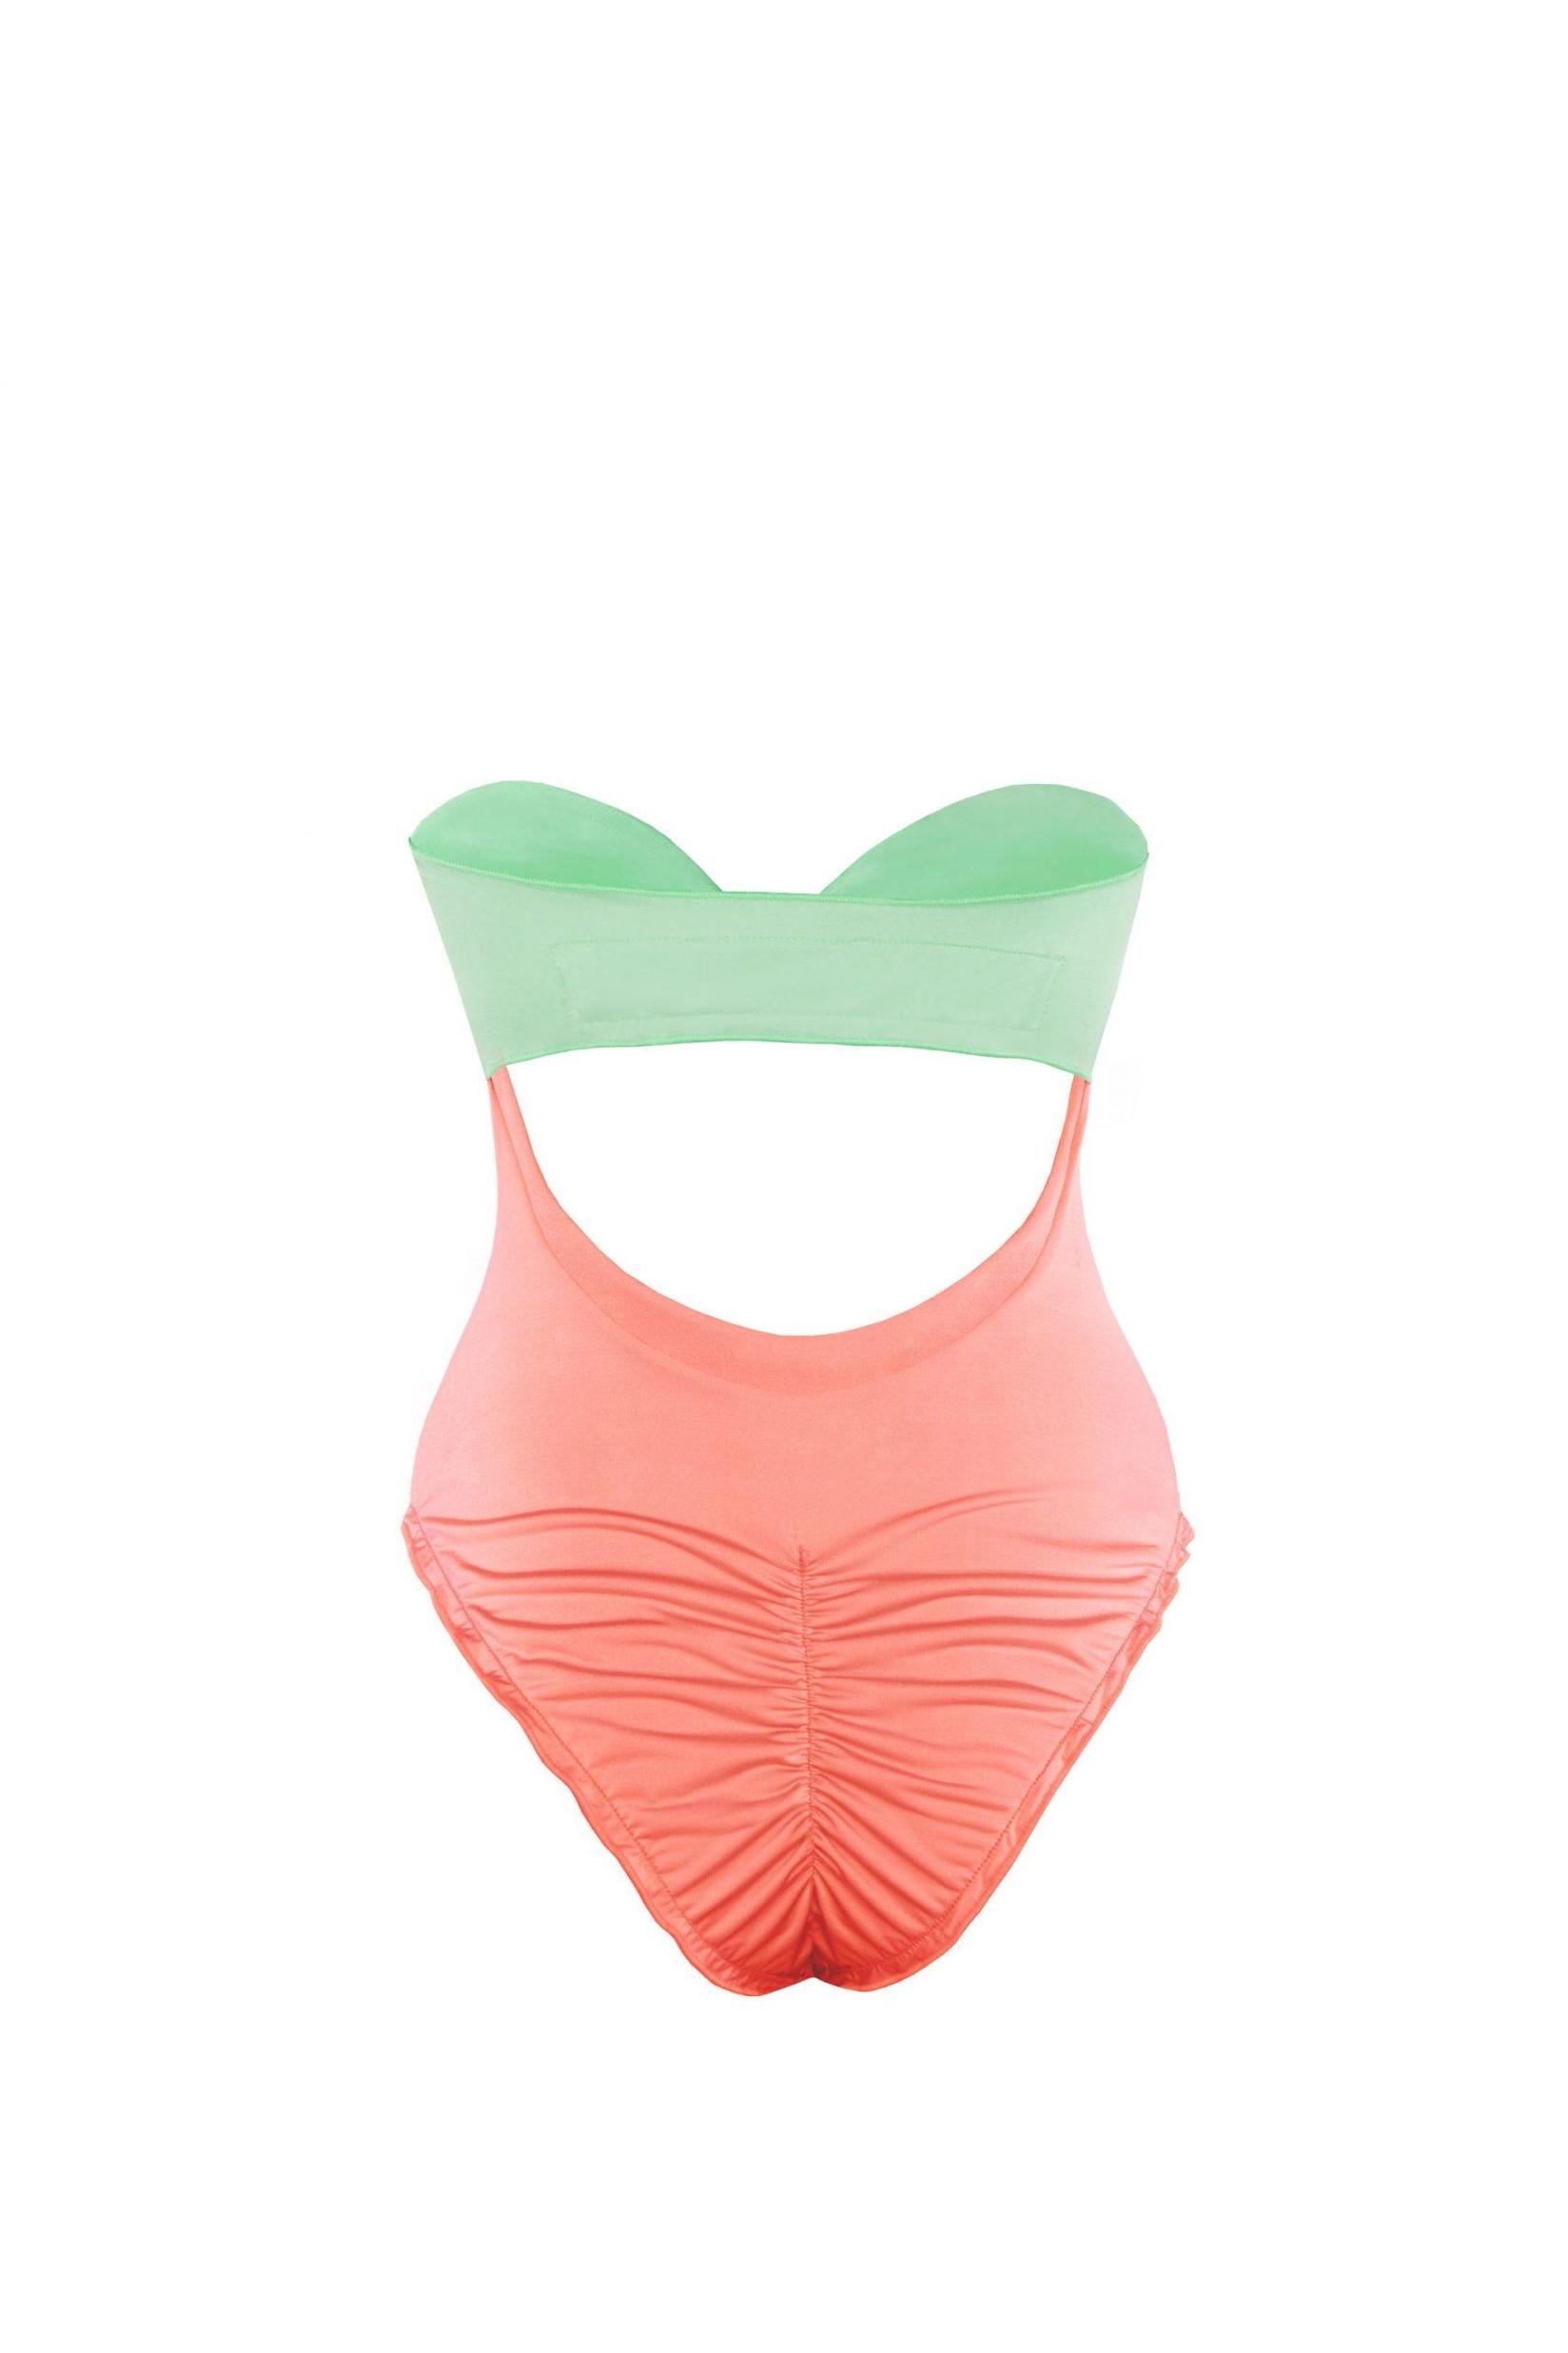 Selected image for DEVI COLLECTION Ženski jednodelni kupaći kostim Amber tirkizno-roze